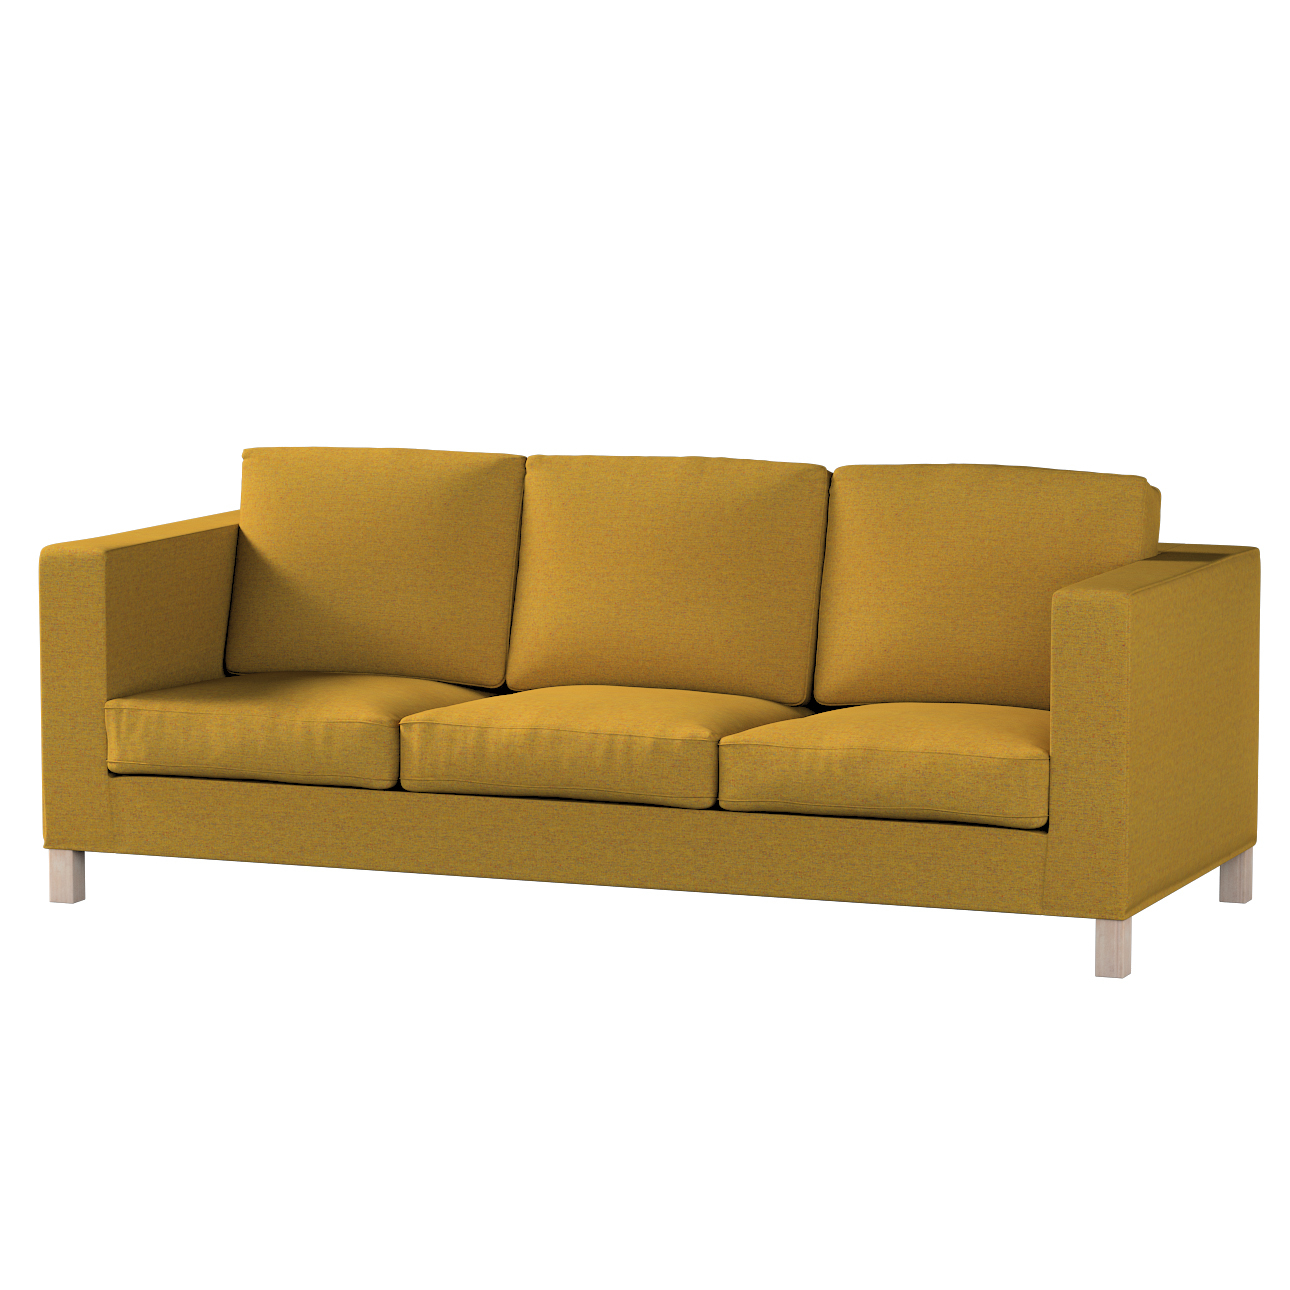 Bezug für Karlanda 3-Sitzer Sofa nicht ausklappbar, kurz, gelb, Bezug für K günstig online kaufen